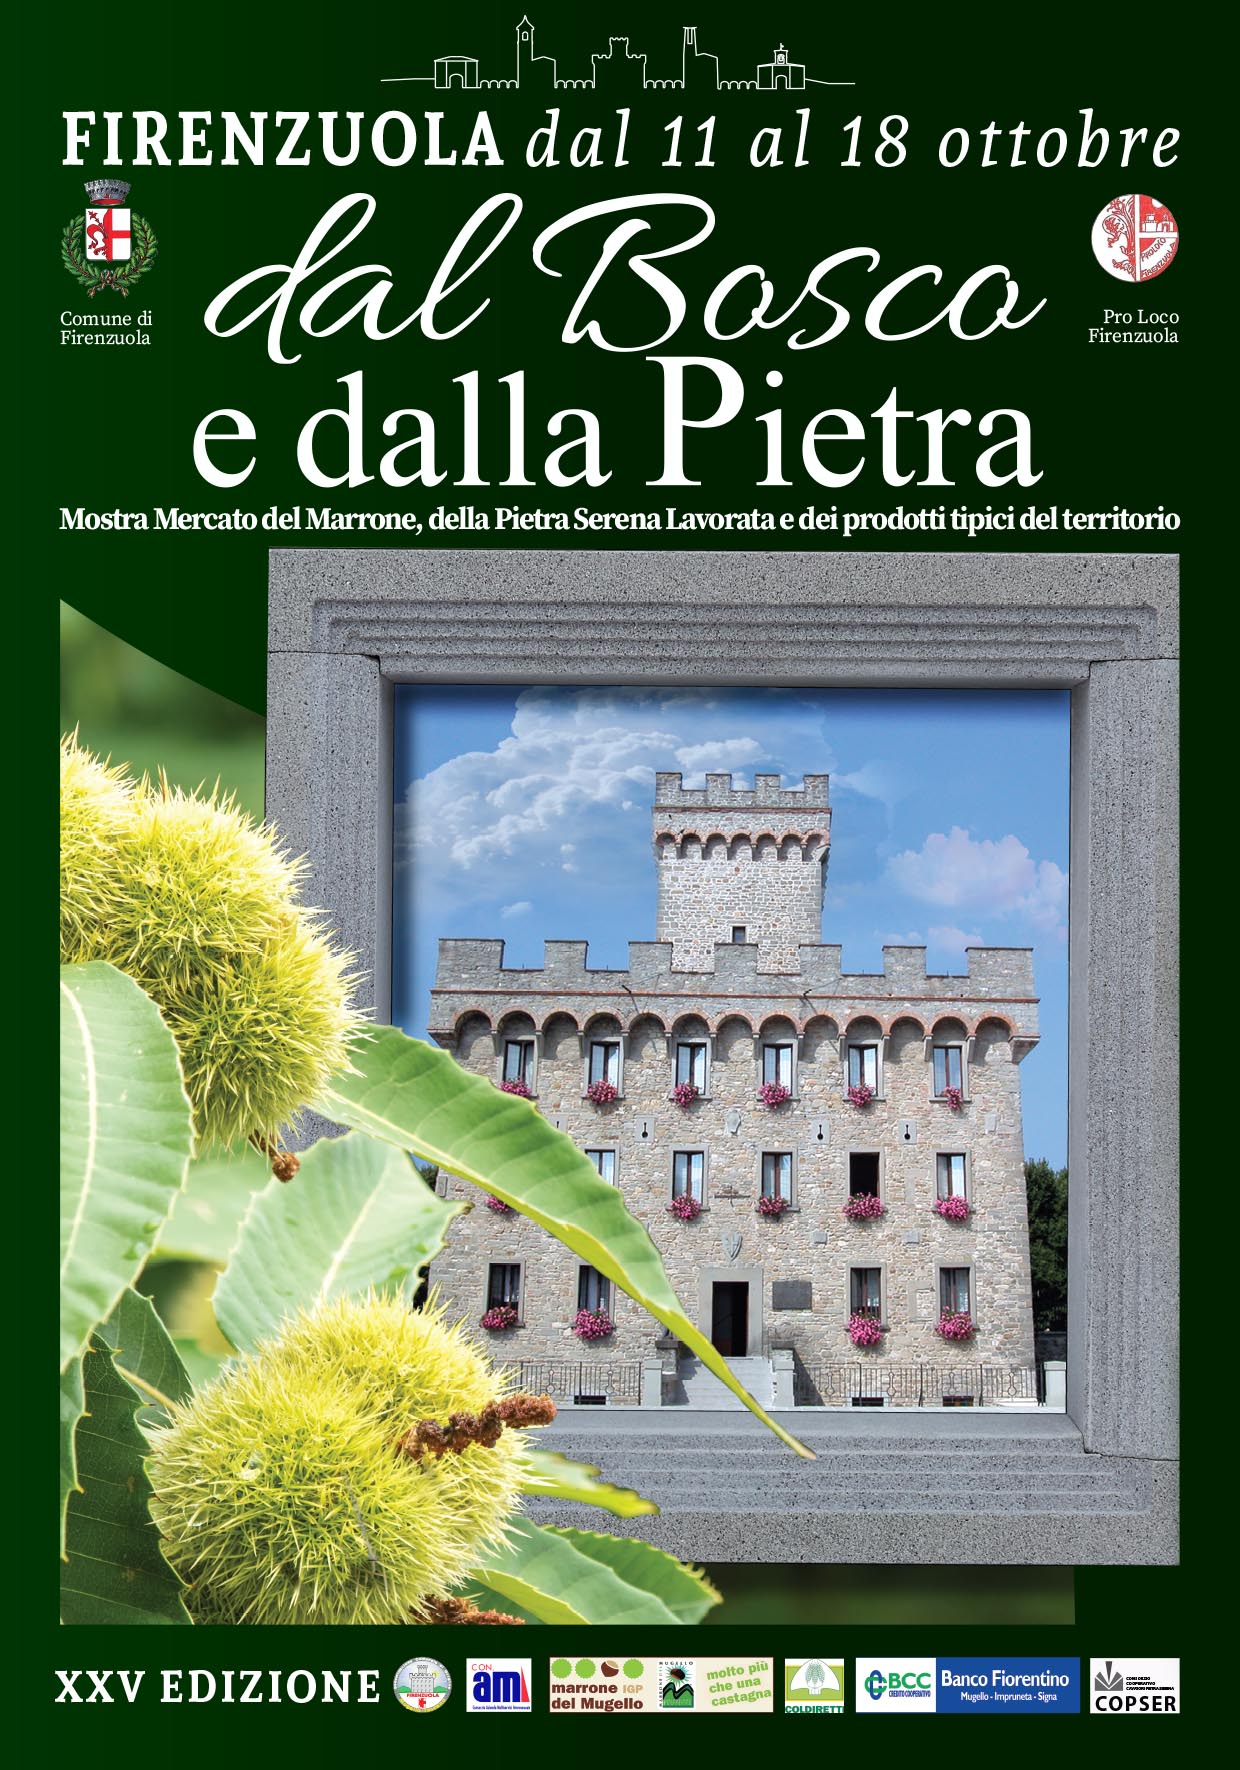 Firenzuola festeggia le 25 edizioni di “Dal Bosco e dalla Pietra”